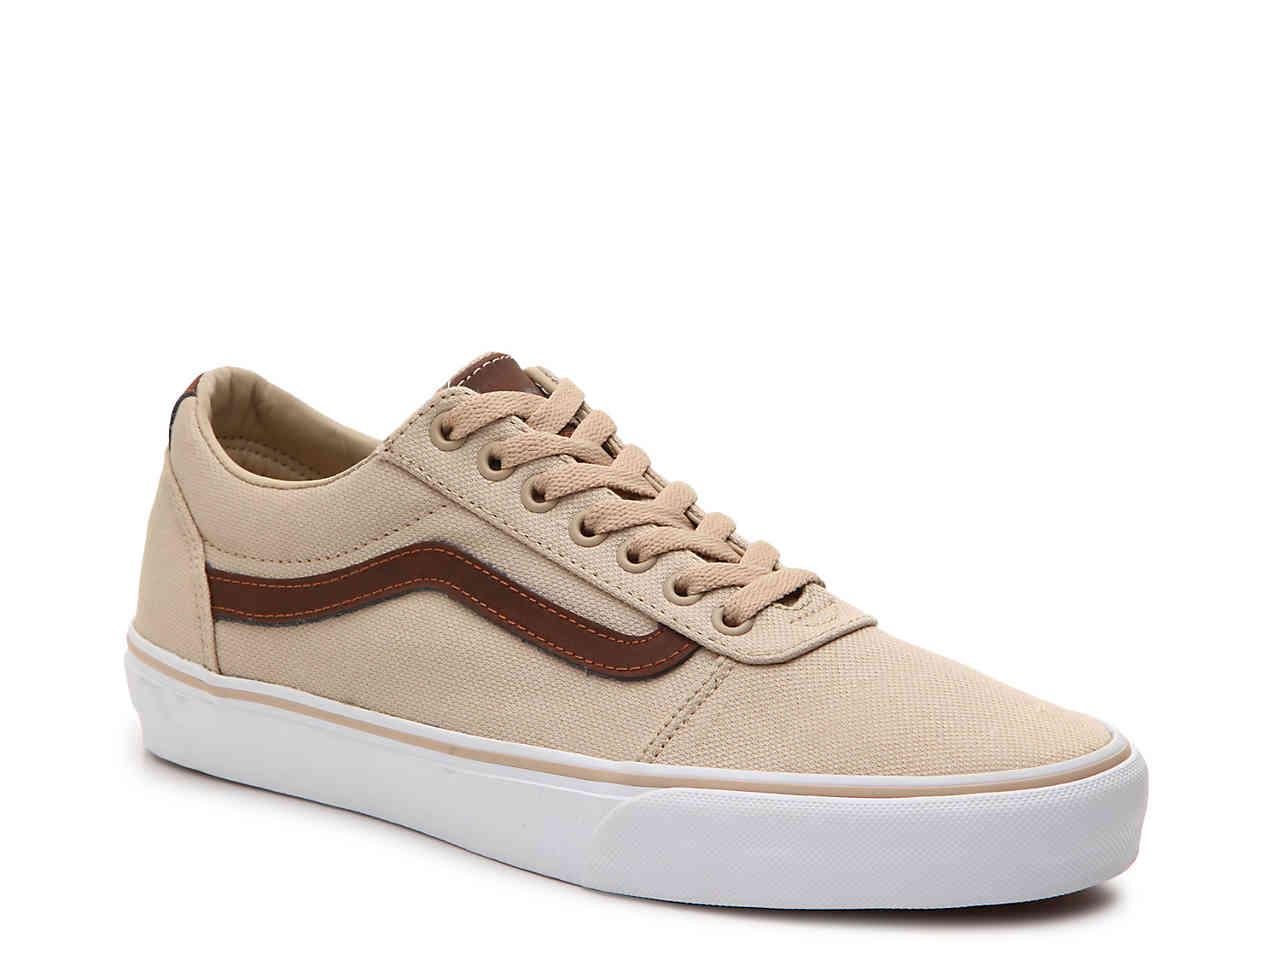 Vans Canvas Ward Sneaker in Tan/Dark Brown (Brown) for Men - Lyst